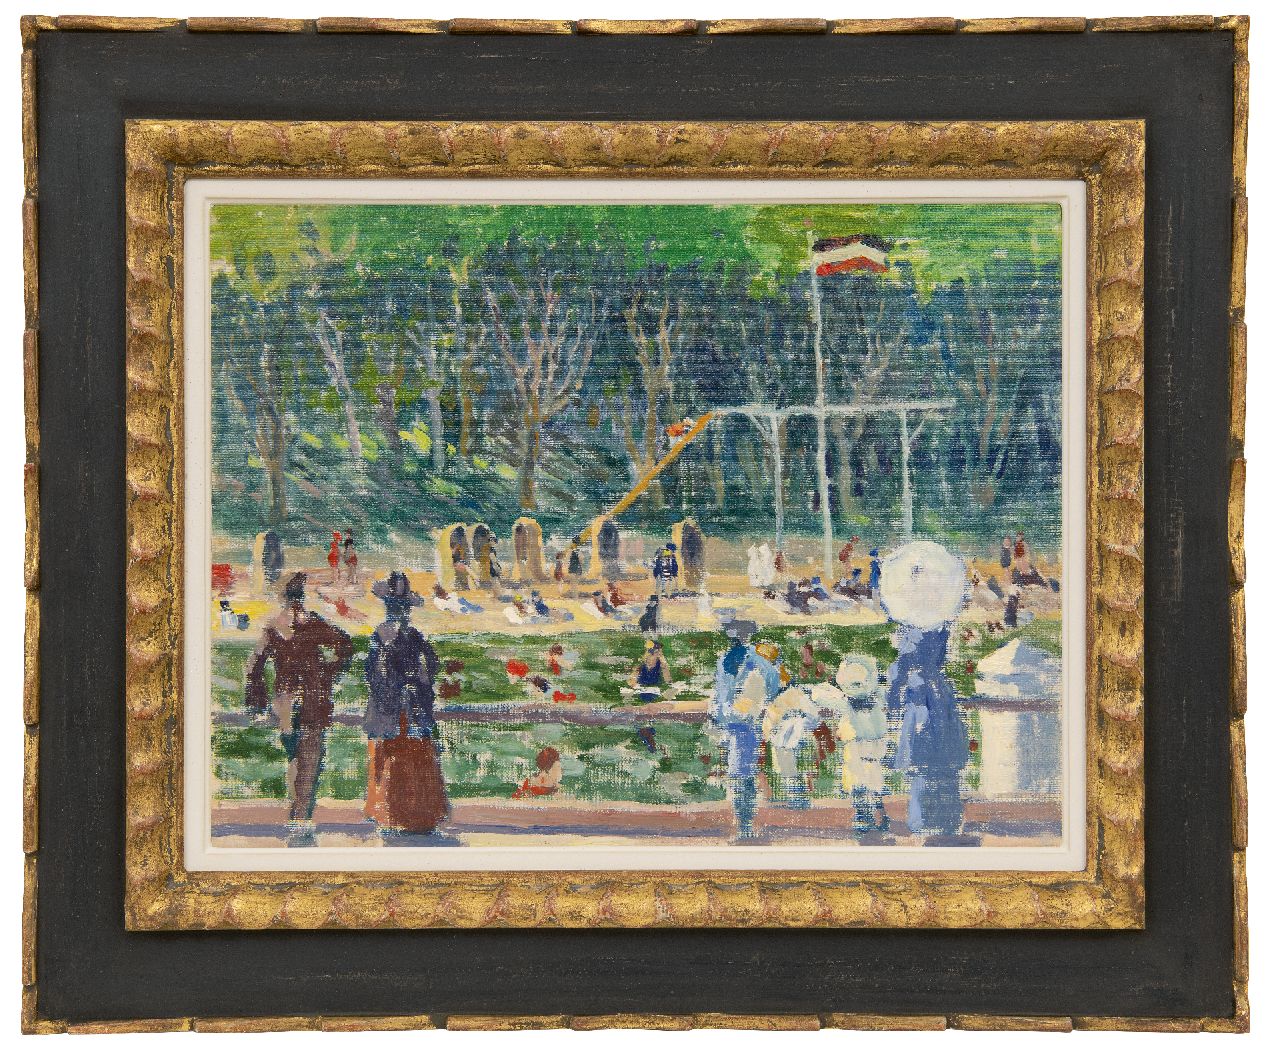 Bloos R.W.  | 'Richard' Willi Bloos | Schilderijen te koop aangeboden | Zonnige dag in het strandbad, olieverf op doek op schildersboard 32,0 x 42,0 cm